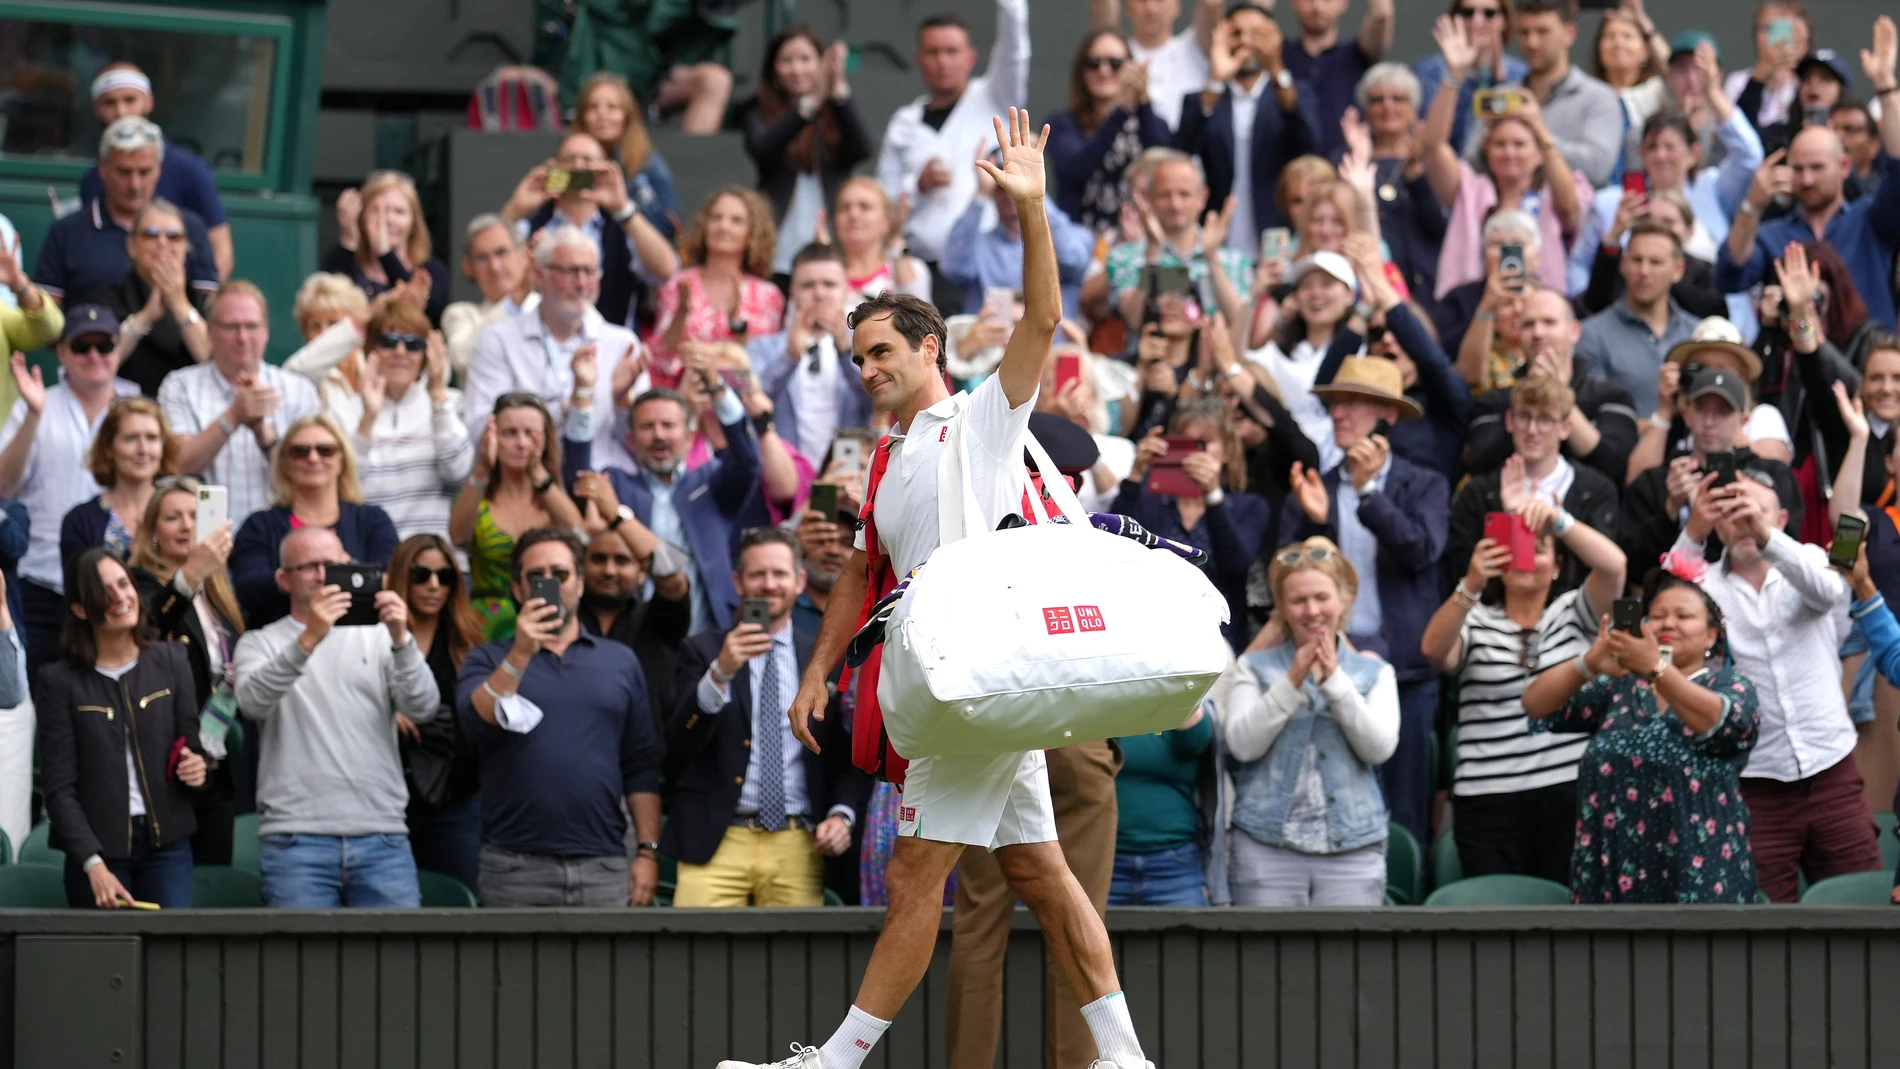 Roger Federer disputó su último partido oficial en julio de 2021: perdió en los cuartos de Wimbledon contra Hurkacz